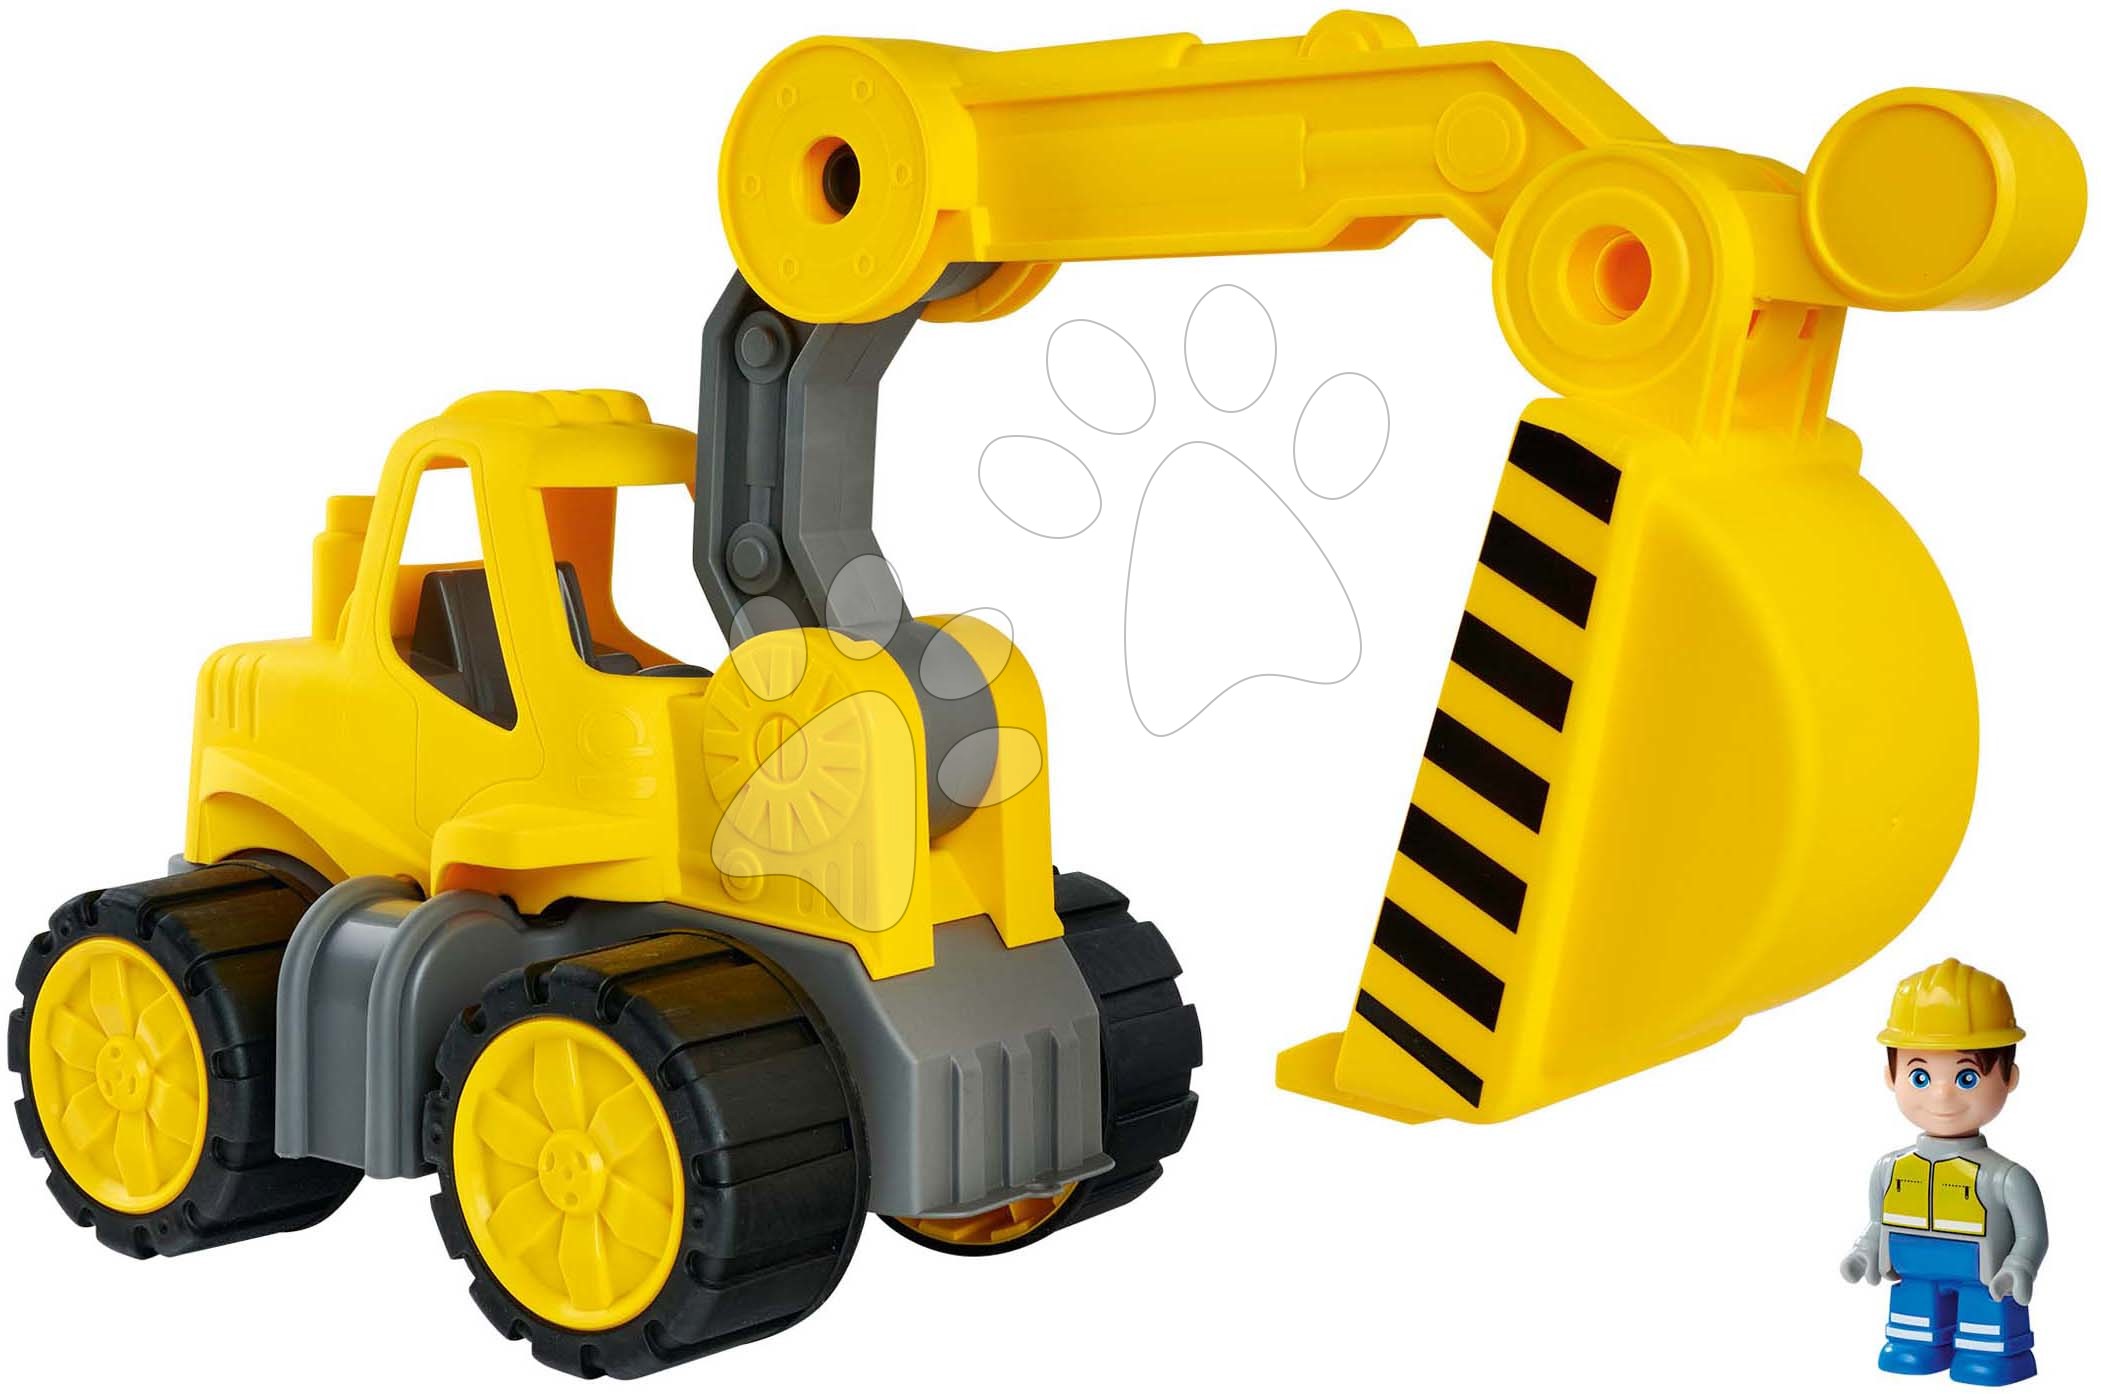 Stavební stroje - Bagr Power Worker Digger + Figurine BIG pracovní stroj 67 cm s gumovými koly od 2 let